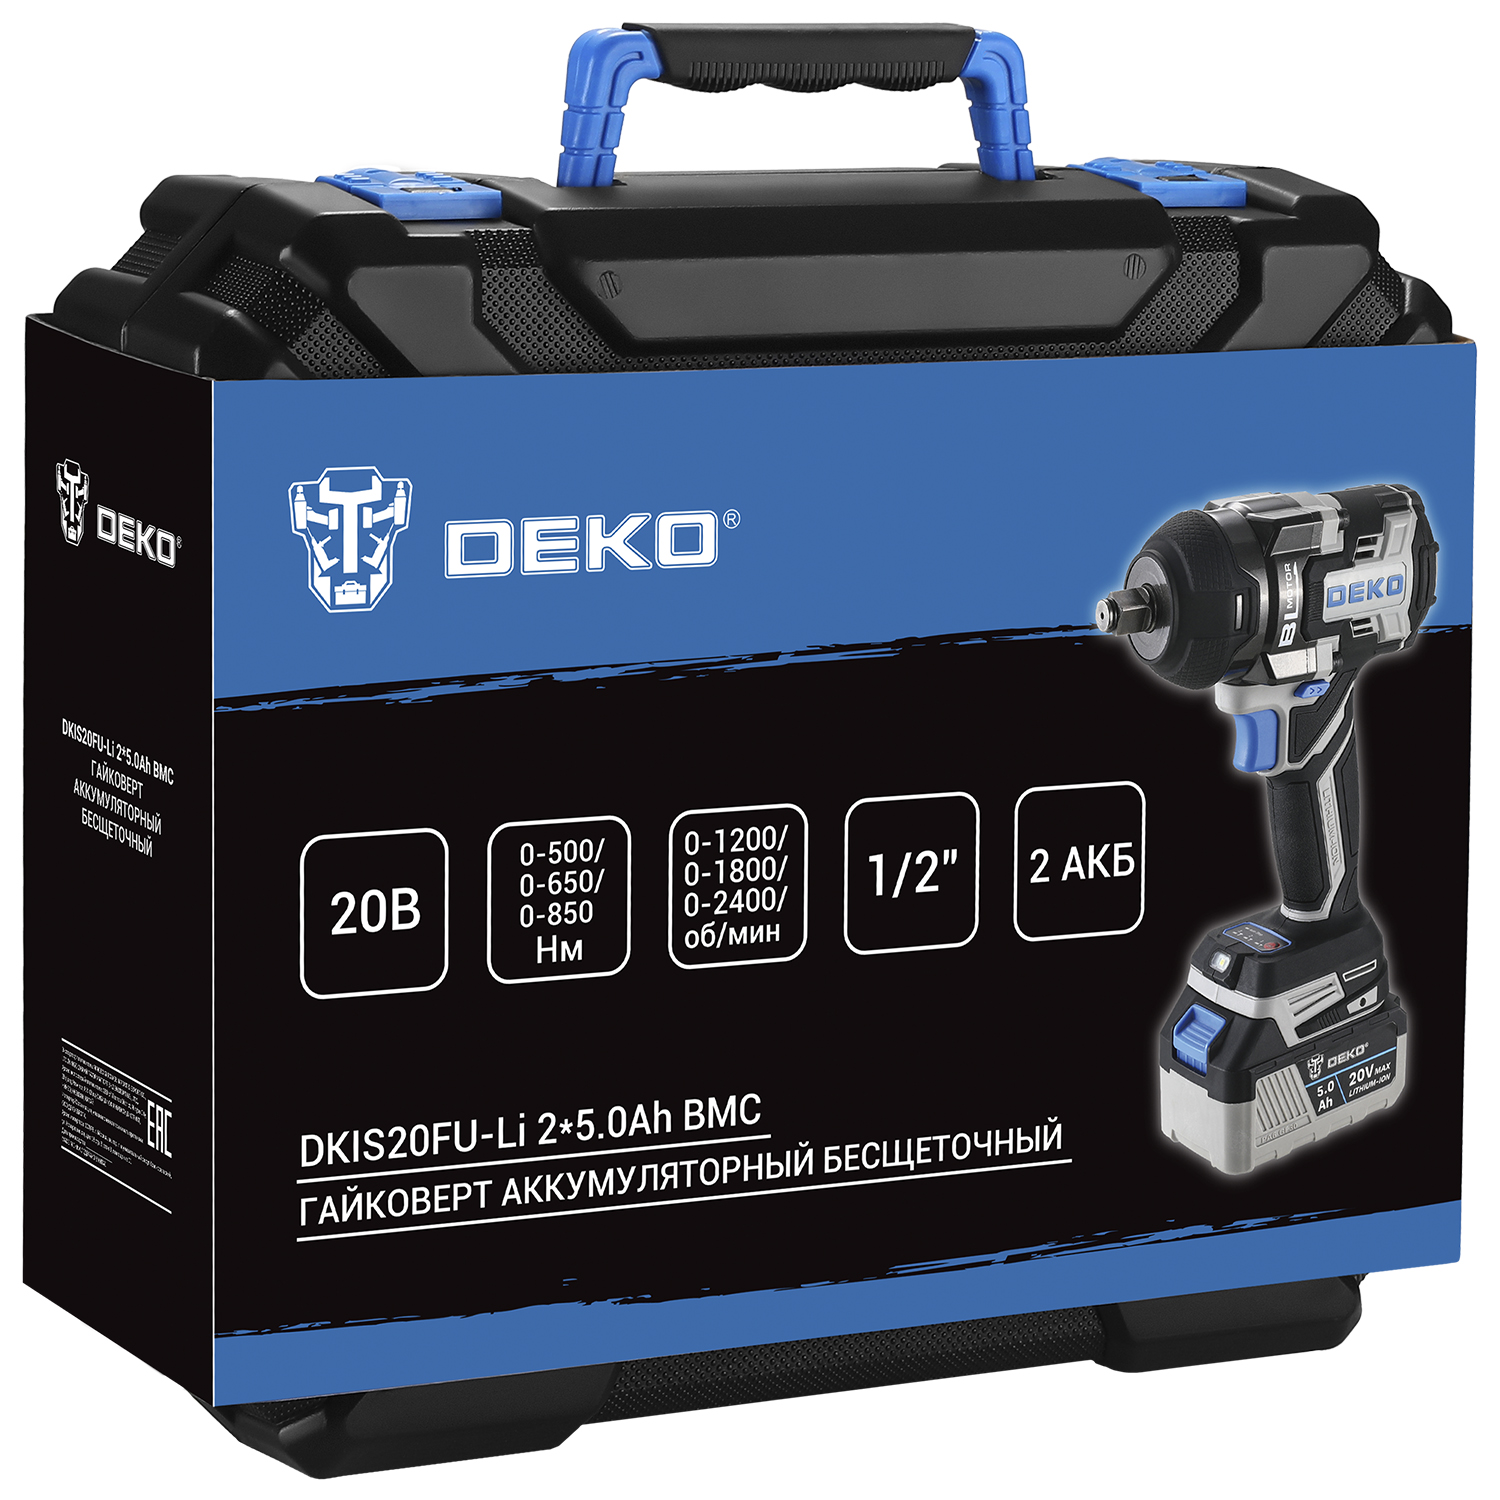  аккумуляторный бесщеточный DEKO DKIS20FU-Li, 20В, 2*5.0Ач .